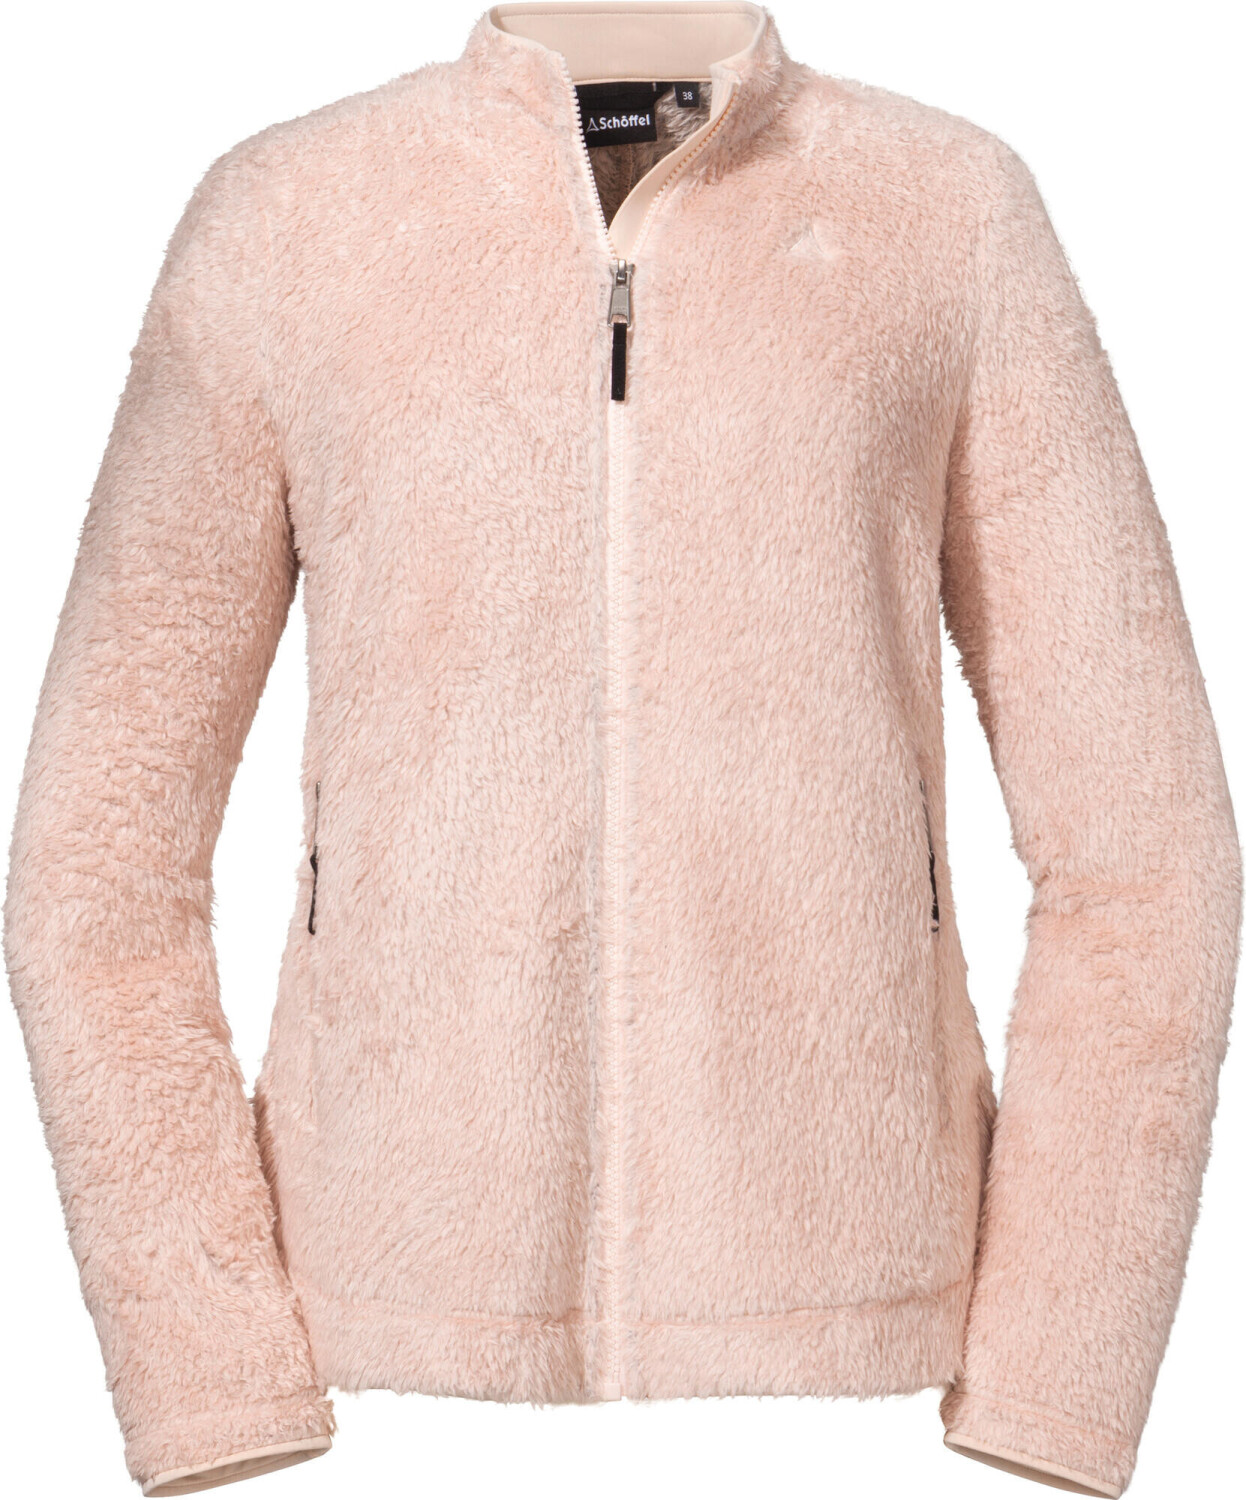 Schöffel Fleece ab € | 70,35 Southgate Jacket bei L Preisvergleich